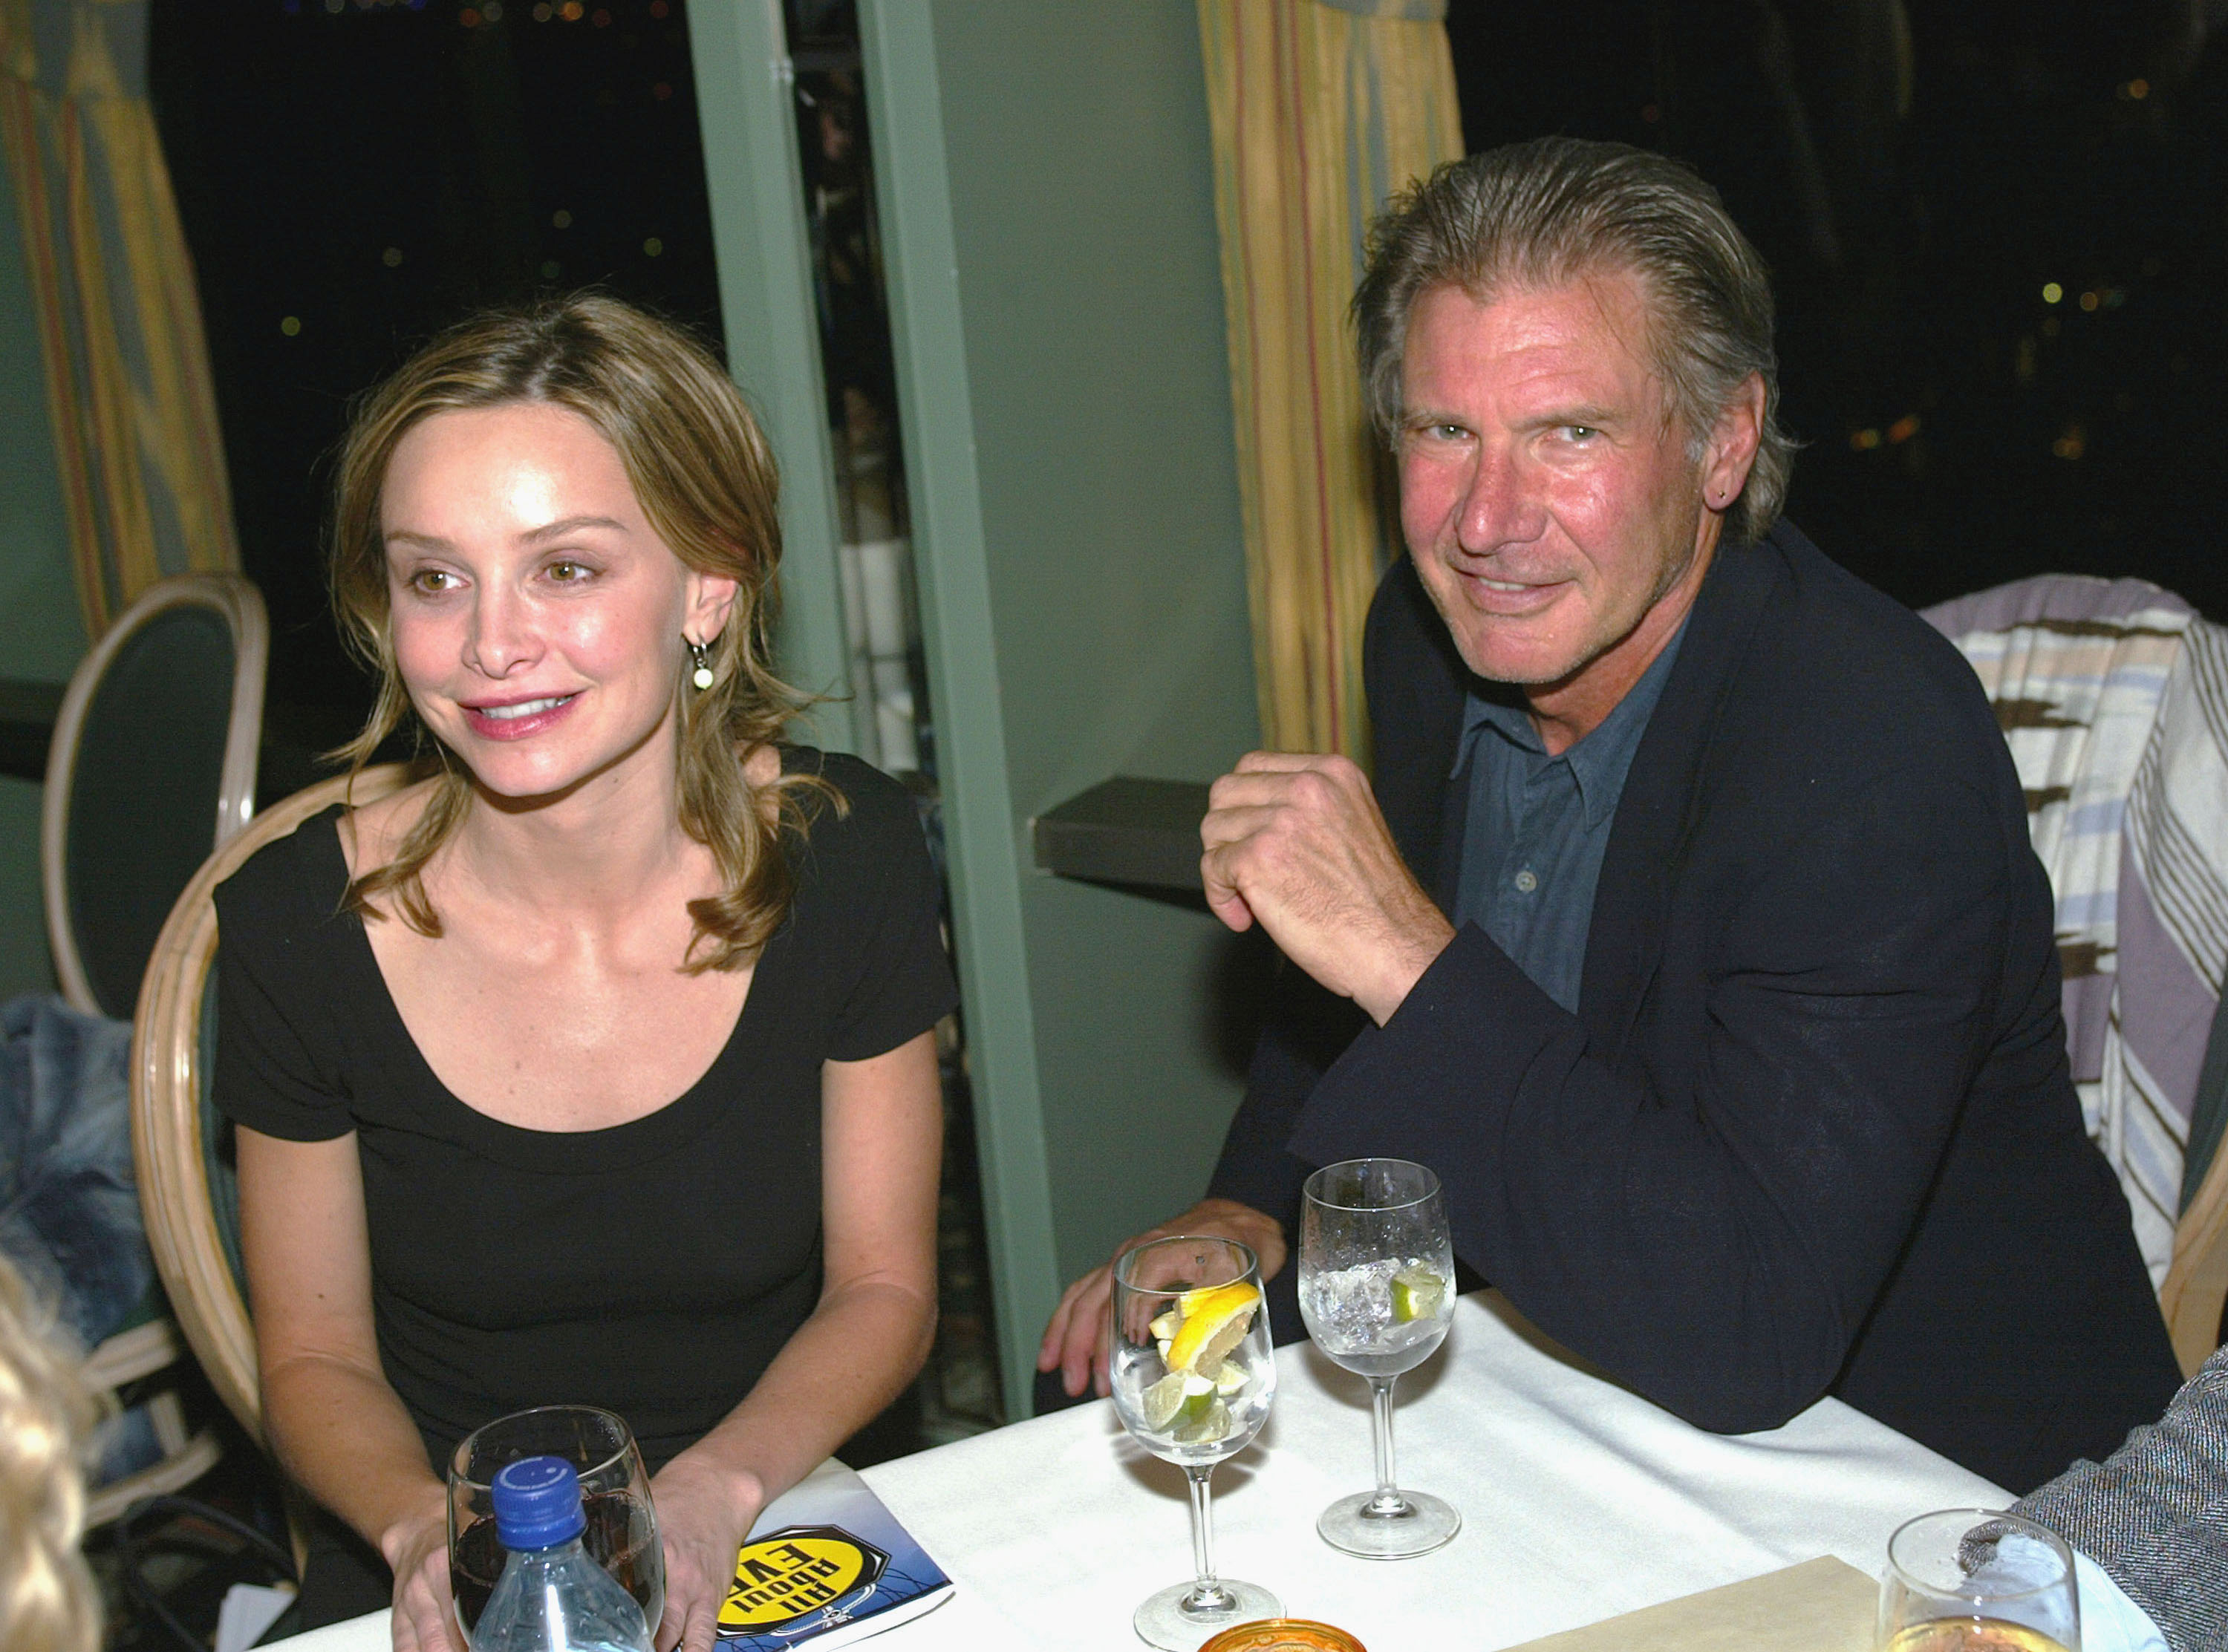 Harrison Ford et Calista Flockhart lors de la présentation de "All About Eve" le 30 mars 2003 à Los Angeles, Californie | Source : Getty Images